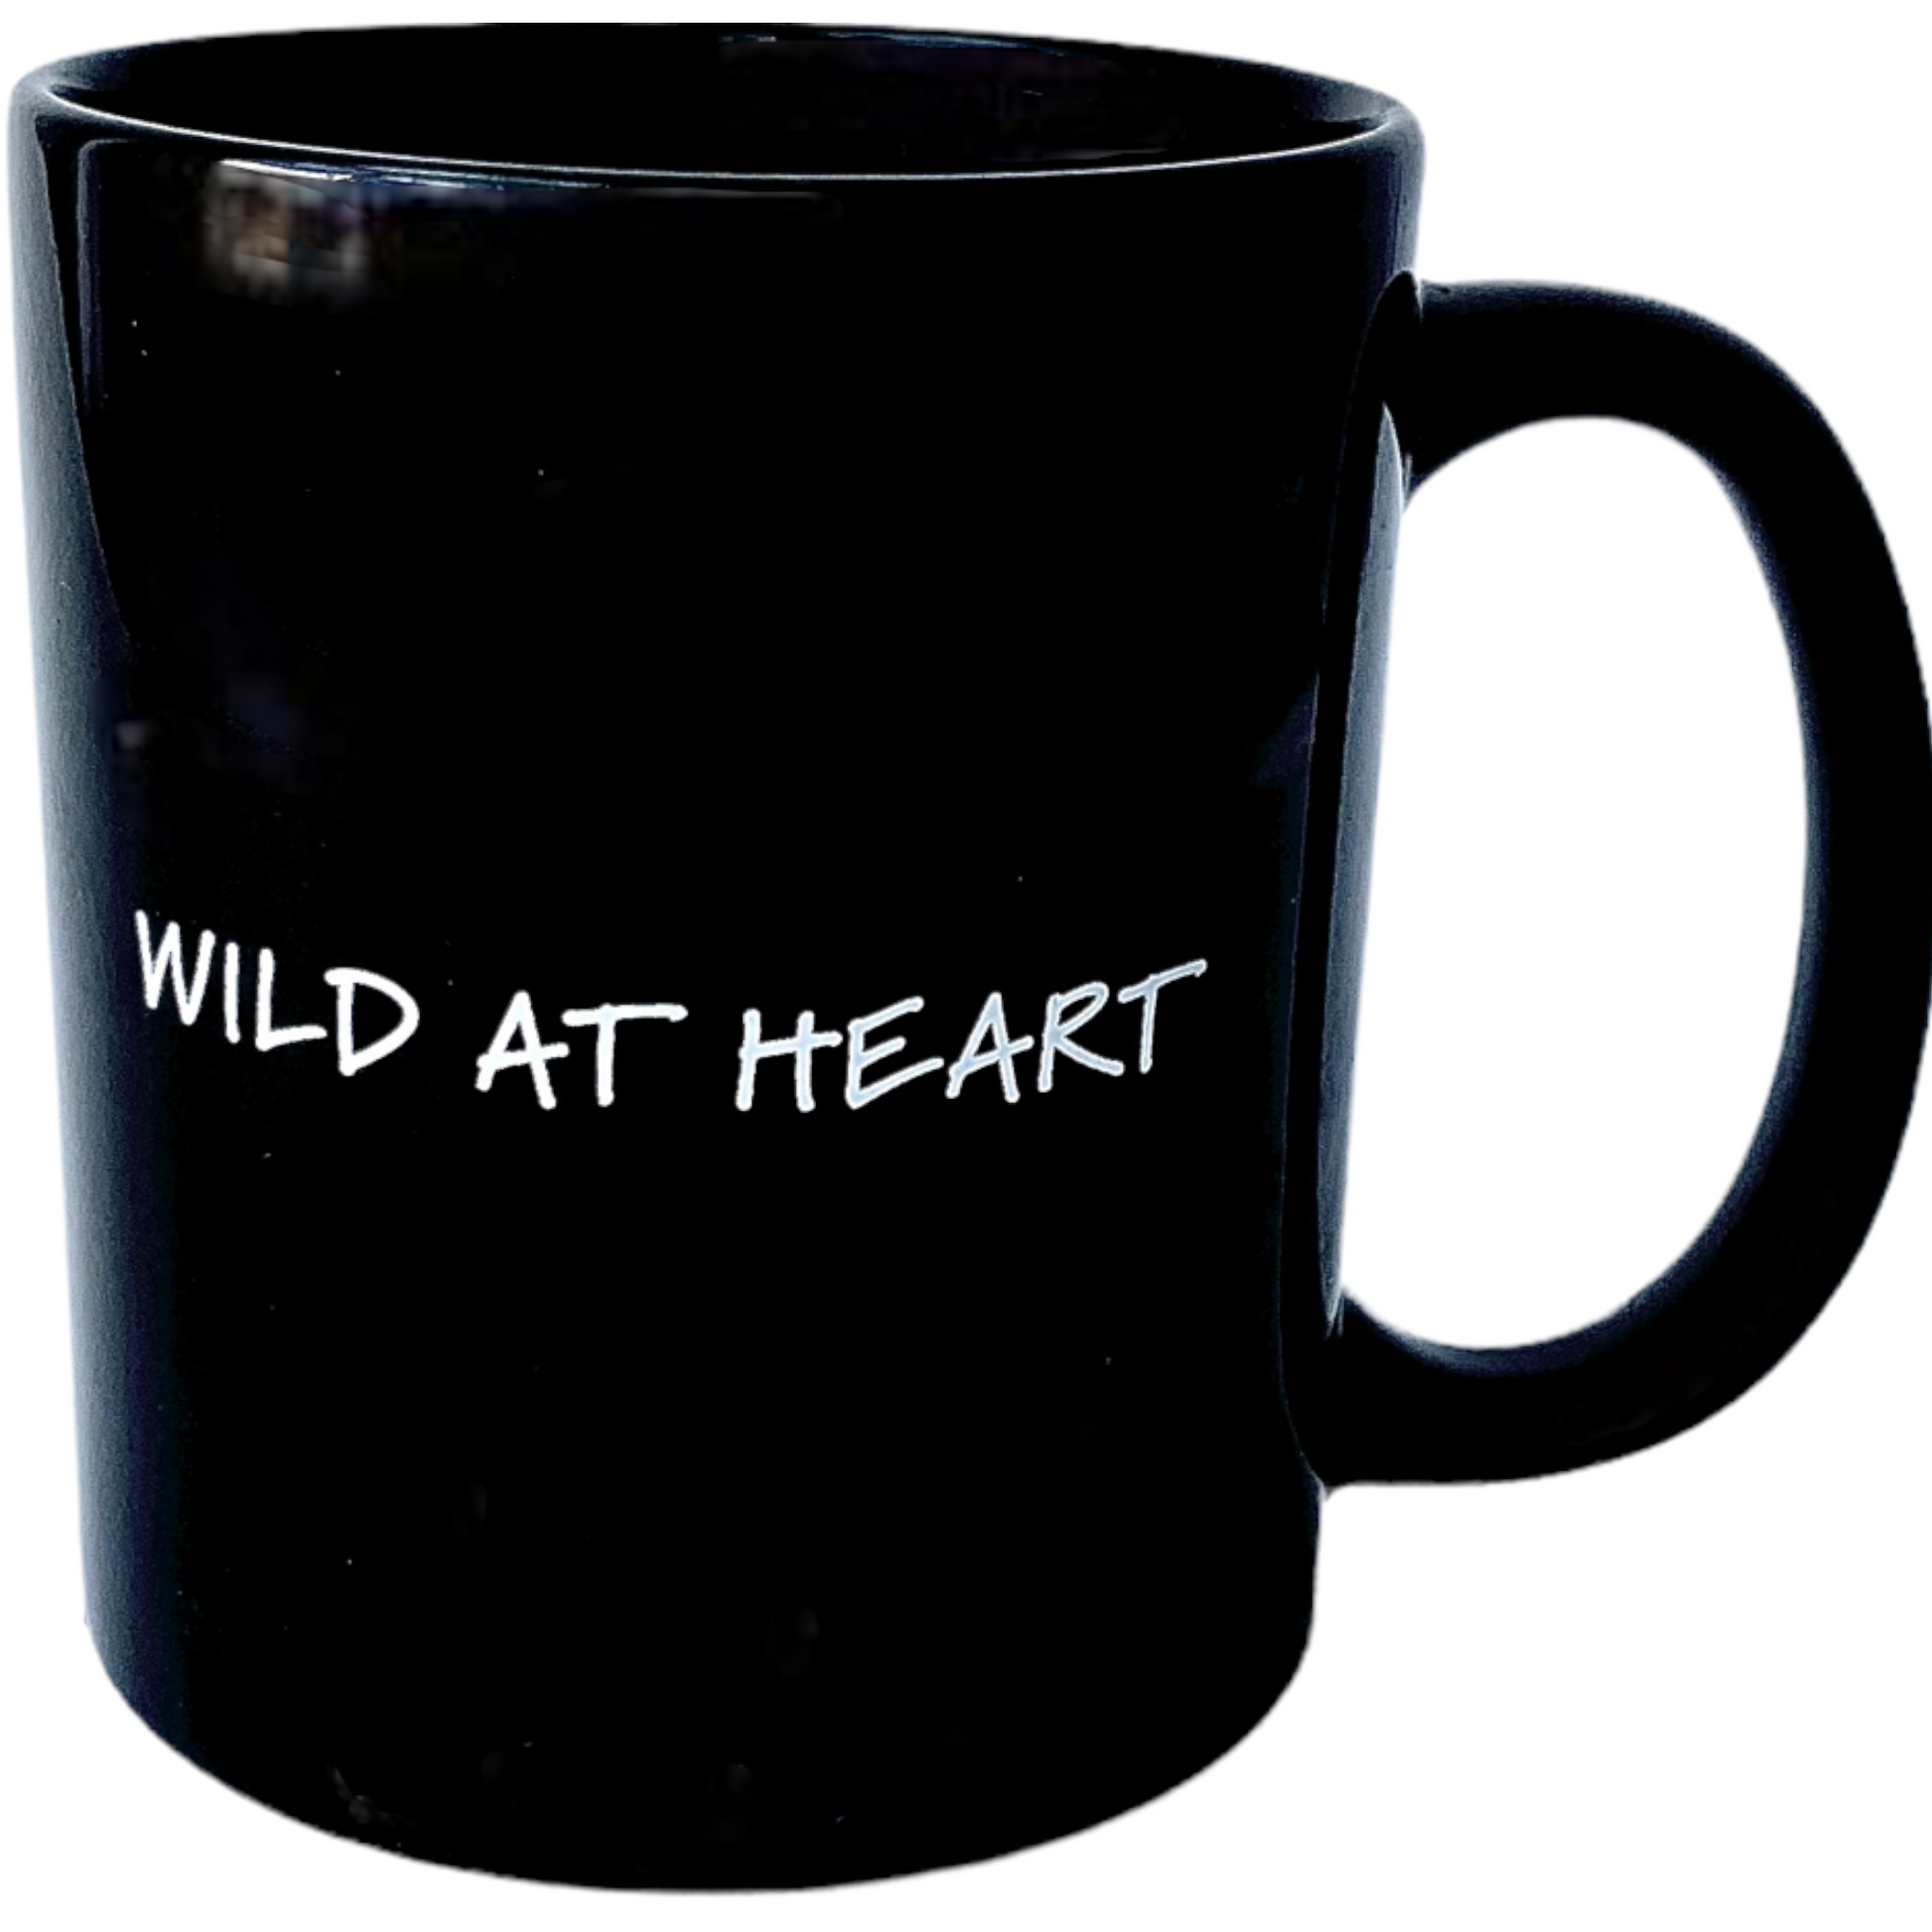 AVL Wild at Heart Mug - The ASHEVILLE Co. TM